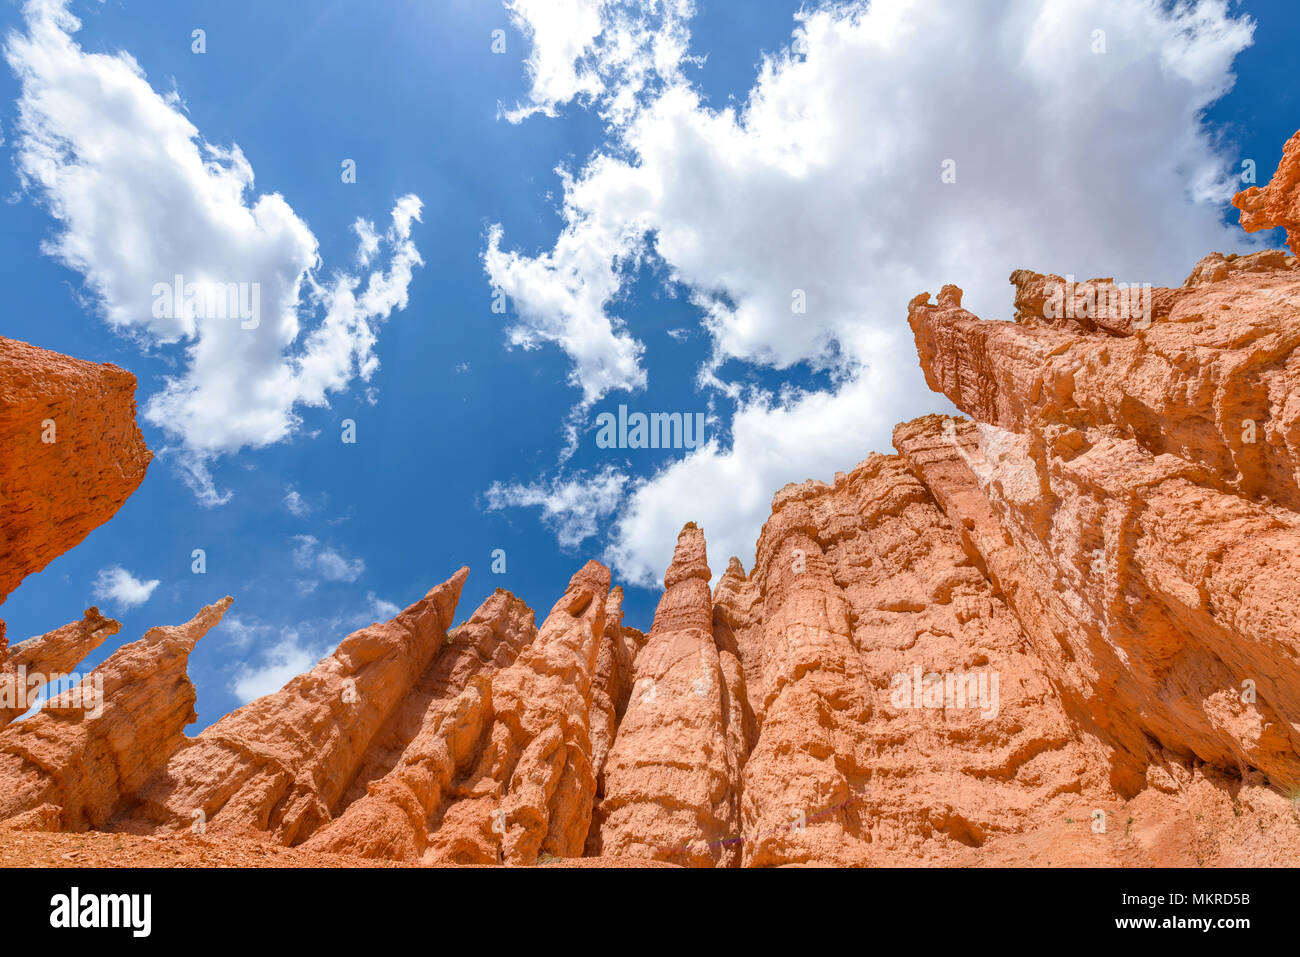 Hoodoos im Himmel - Bunte Sandstein Hoodoos, gegen den strahlend blauen Himmel und weiße Wolken, am Queens Garden des Bryce Canyon National Park, Utah, USA. Stockfoto